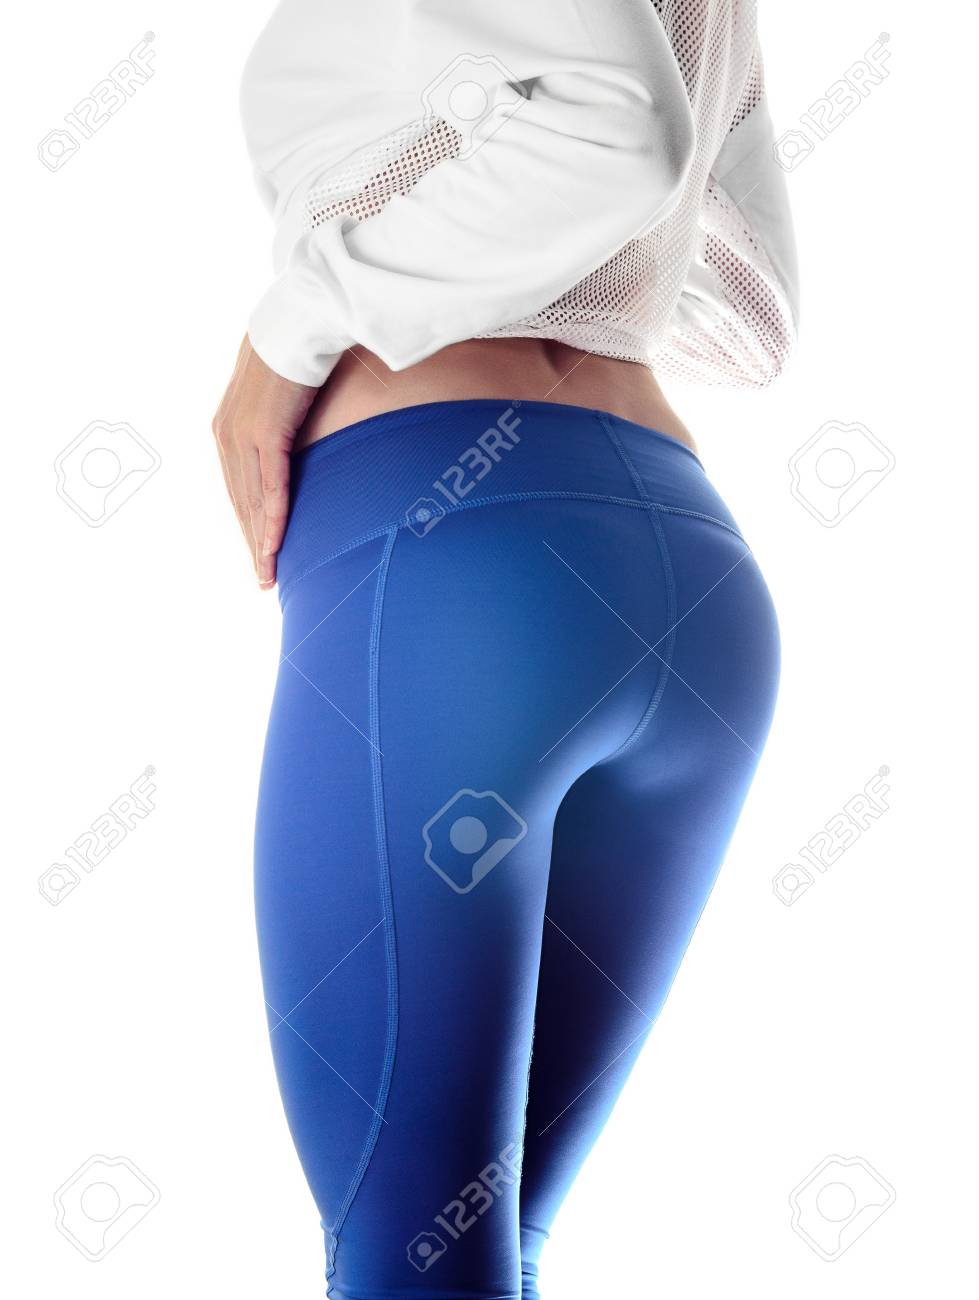 Perfect girl hips ass